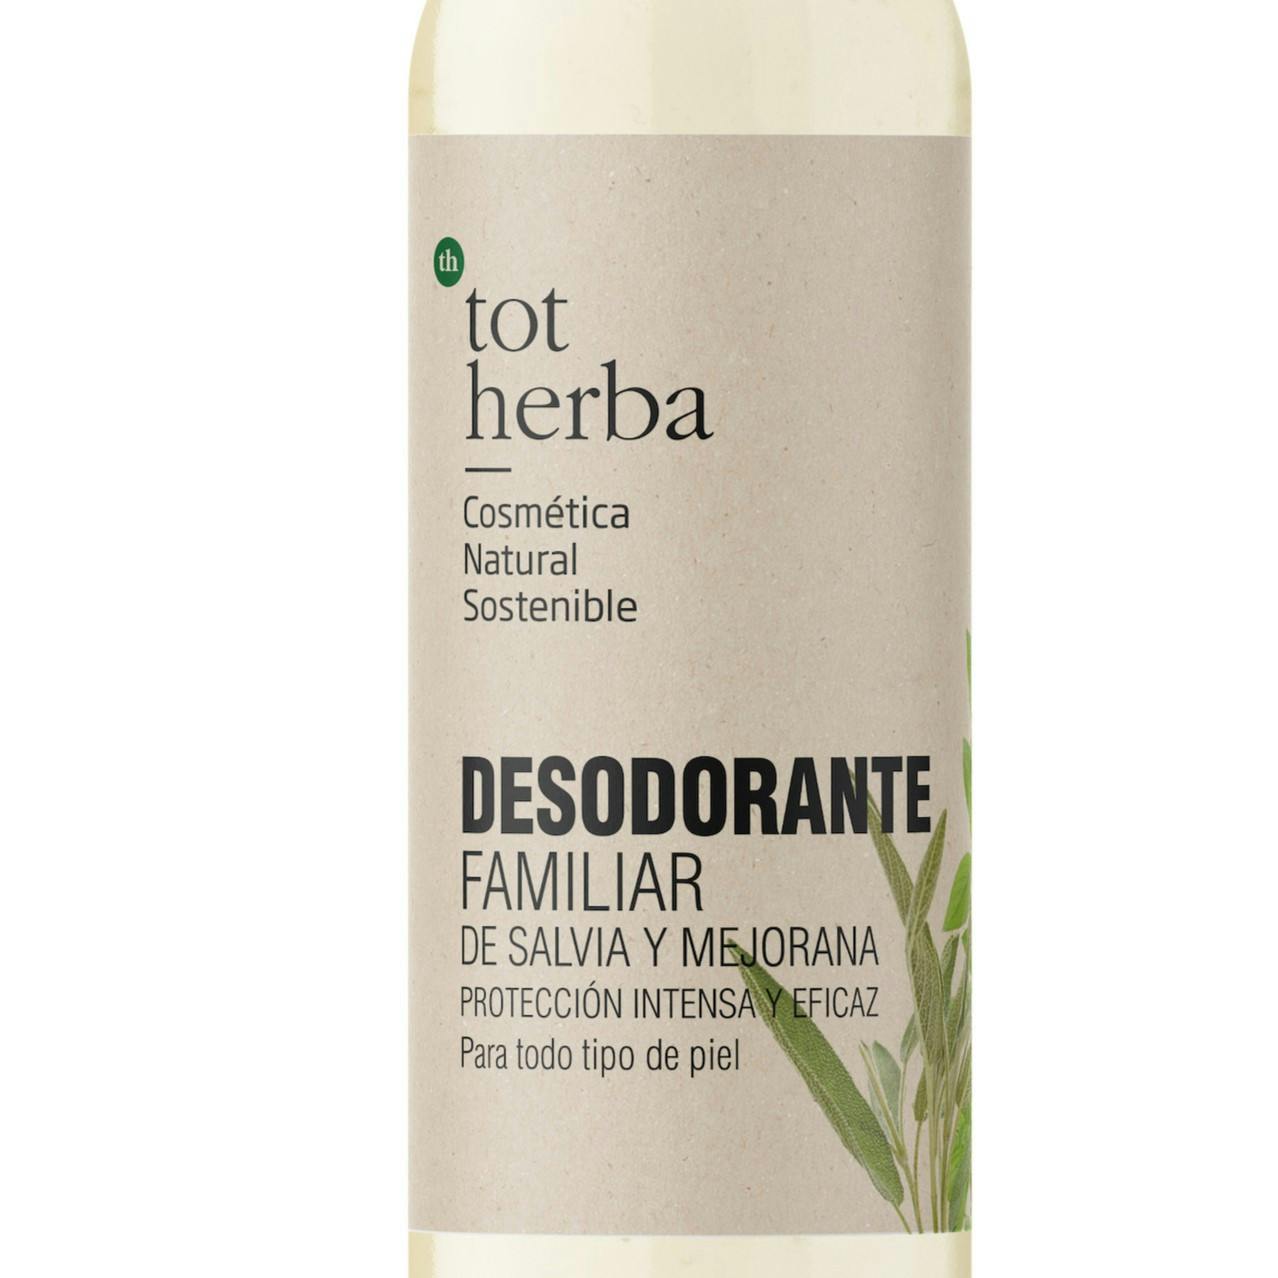 Imagen de etiqueta Desodorante Tot Herba